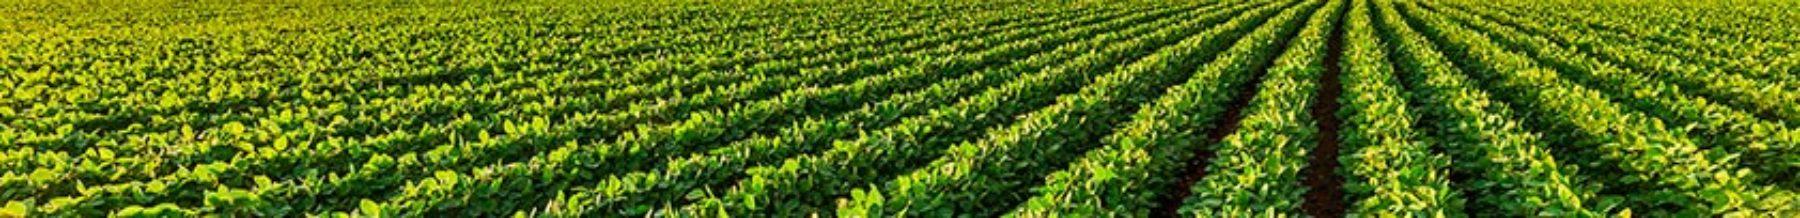 Consultoria e Assessoria Agronômica em Agricultura Sustentável